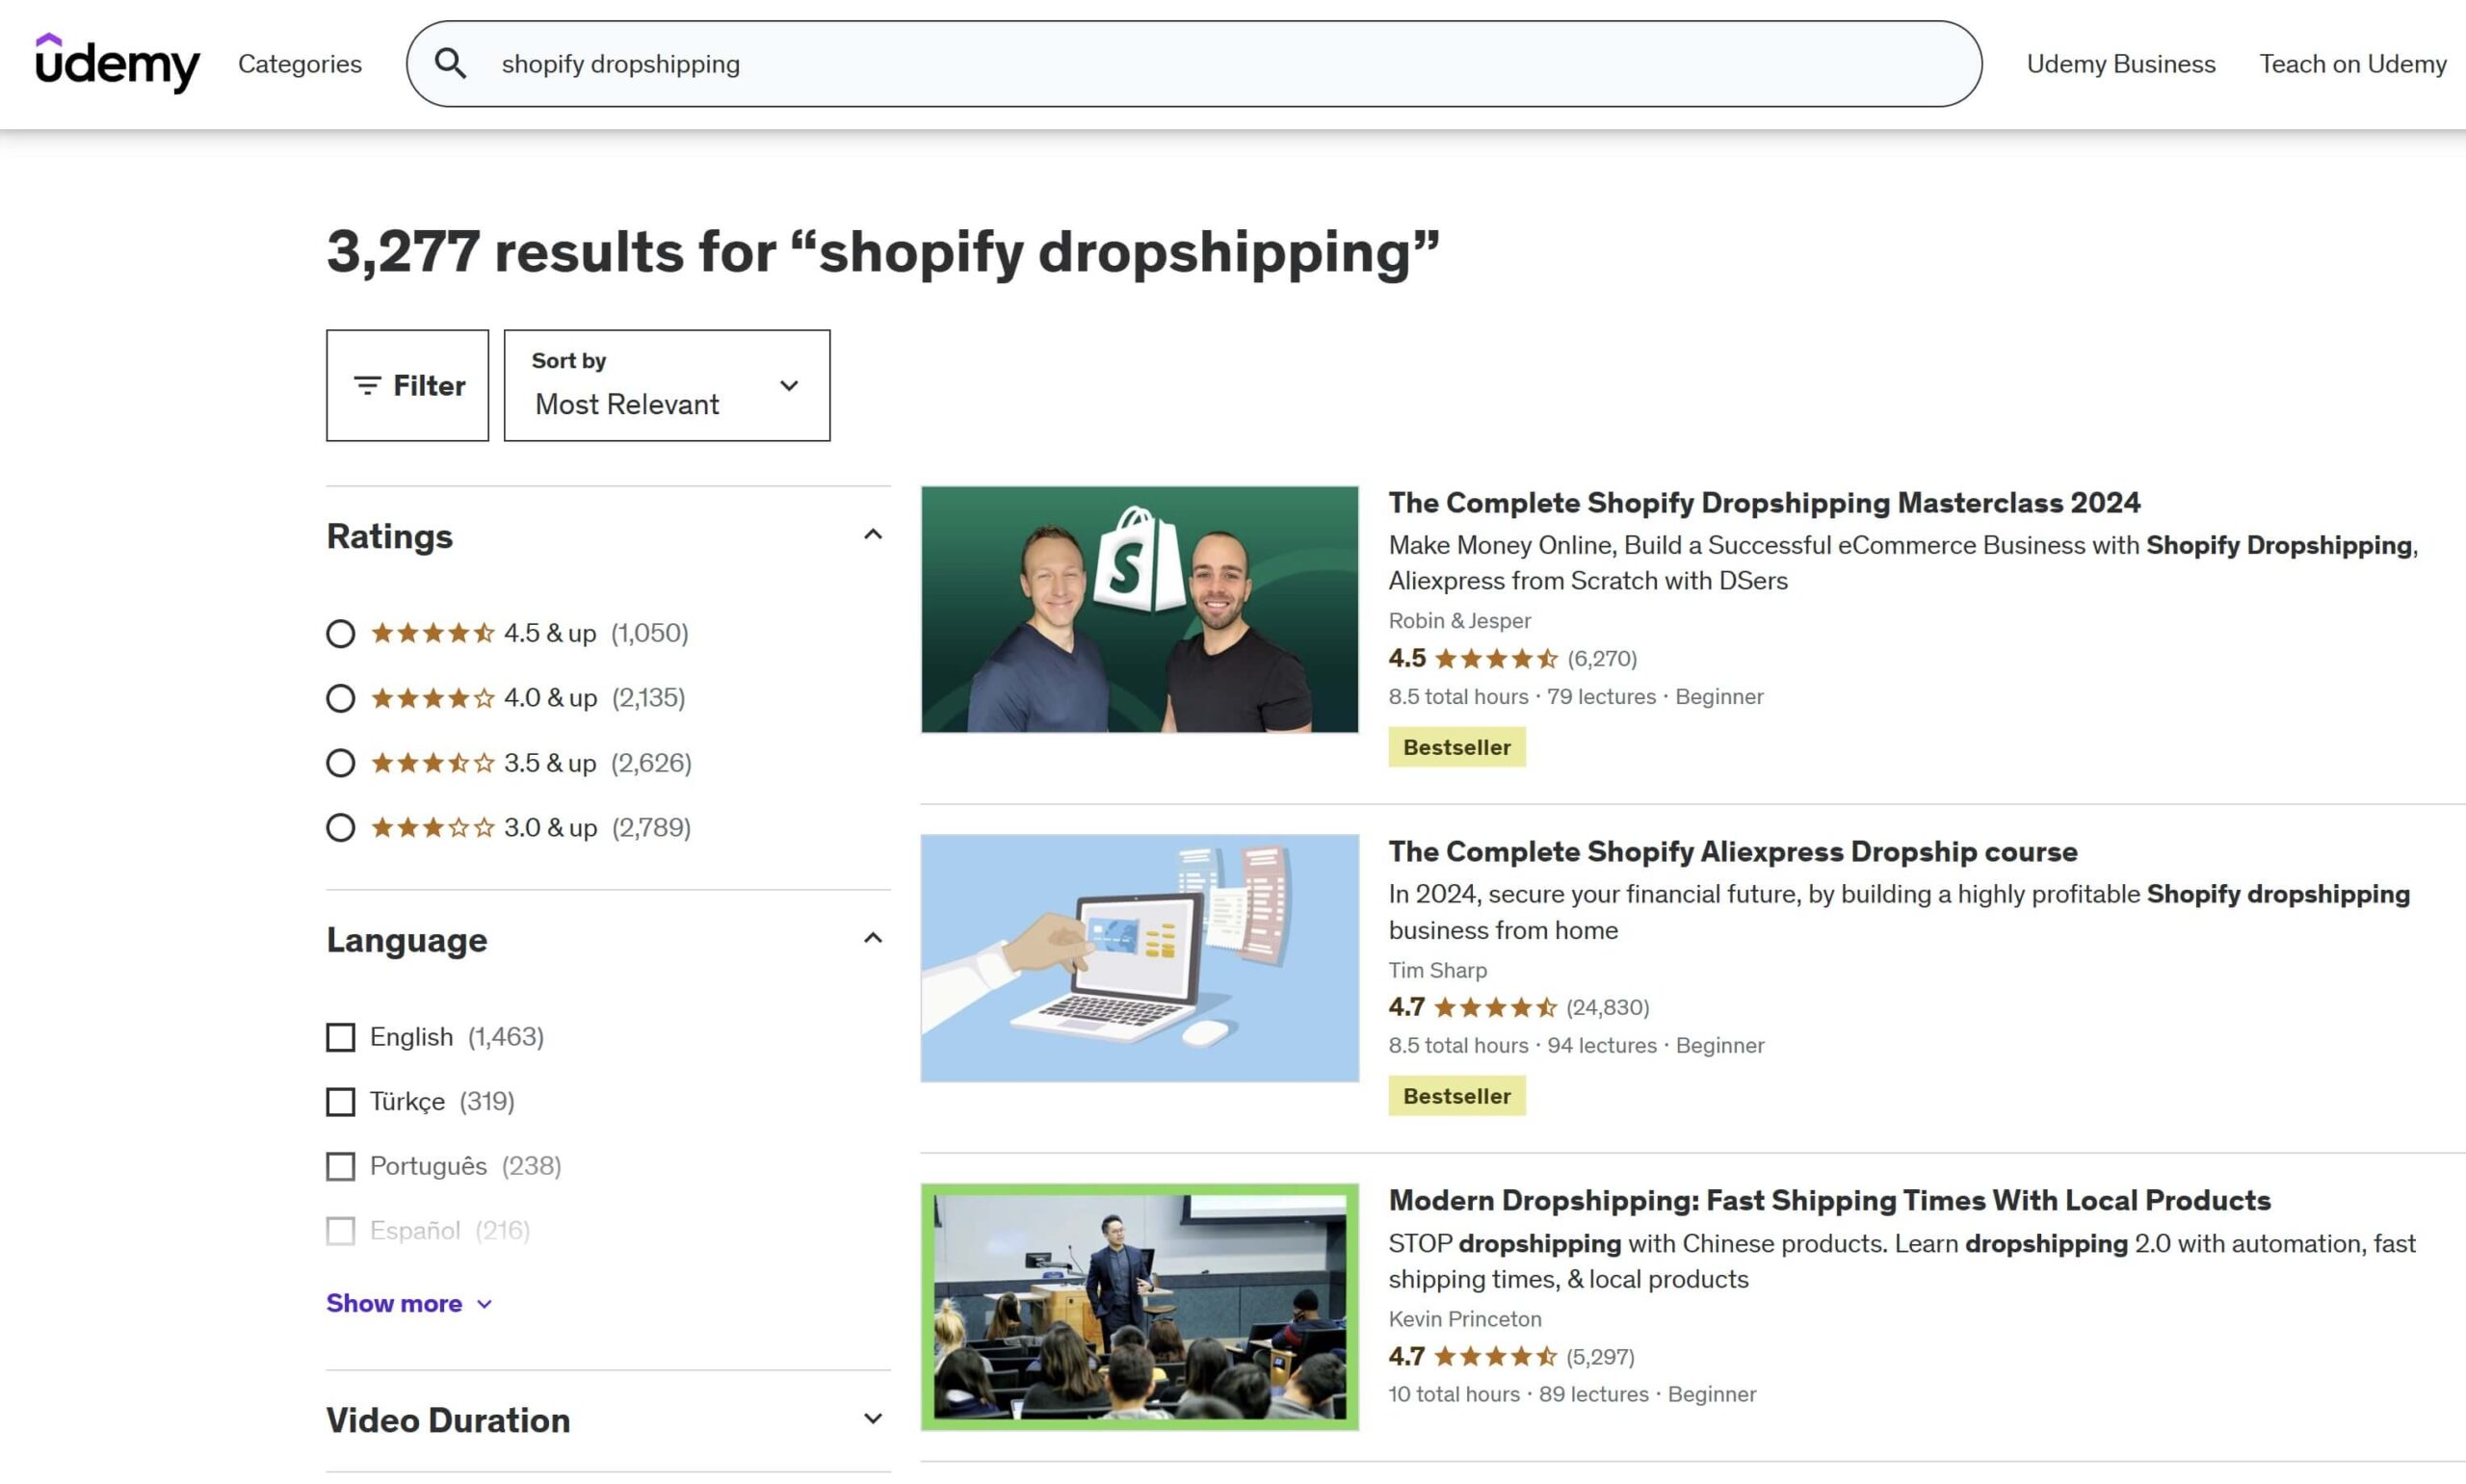 Risultati della ricerca Dropshipping di Shopify su Udemy